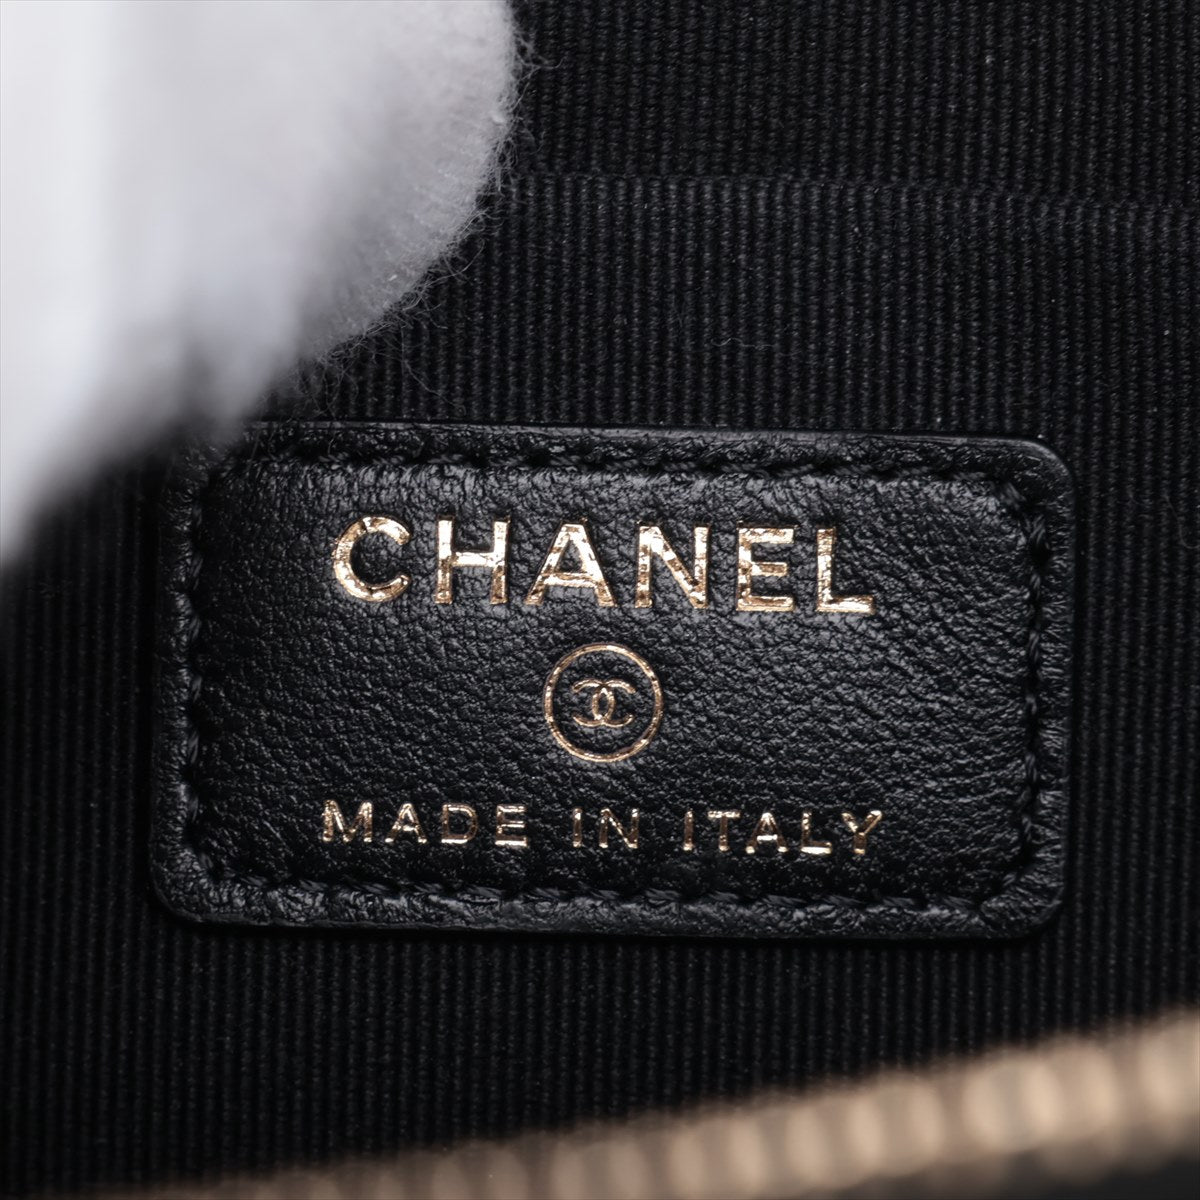 Chanel Matrasse  Chain Shoulder Bag Vanity Black G  31st